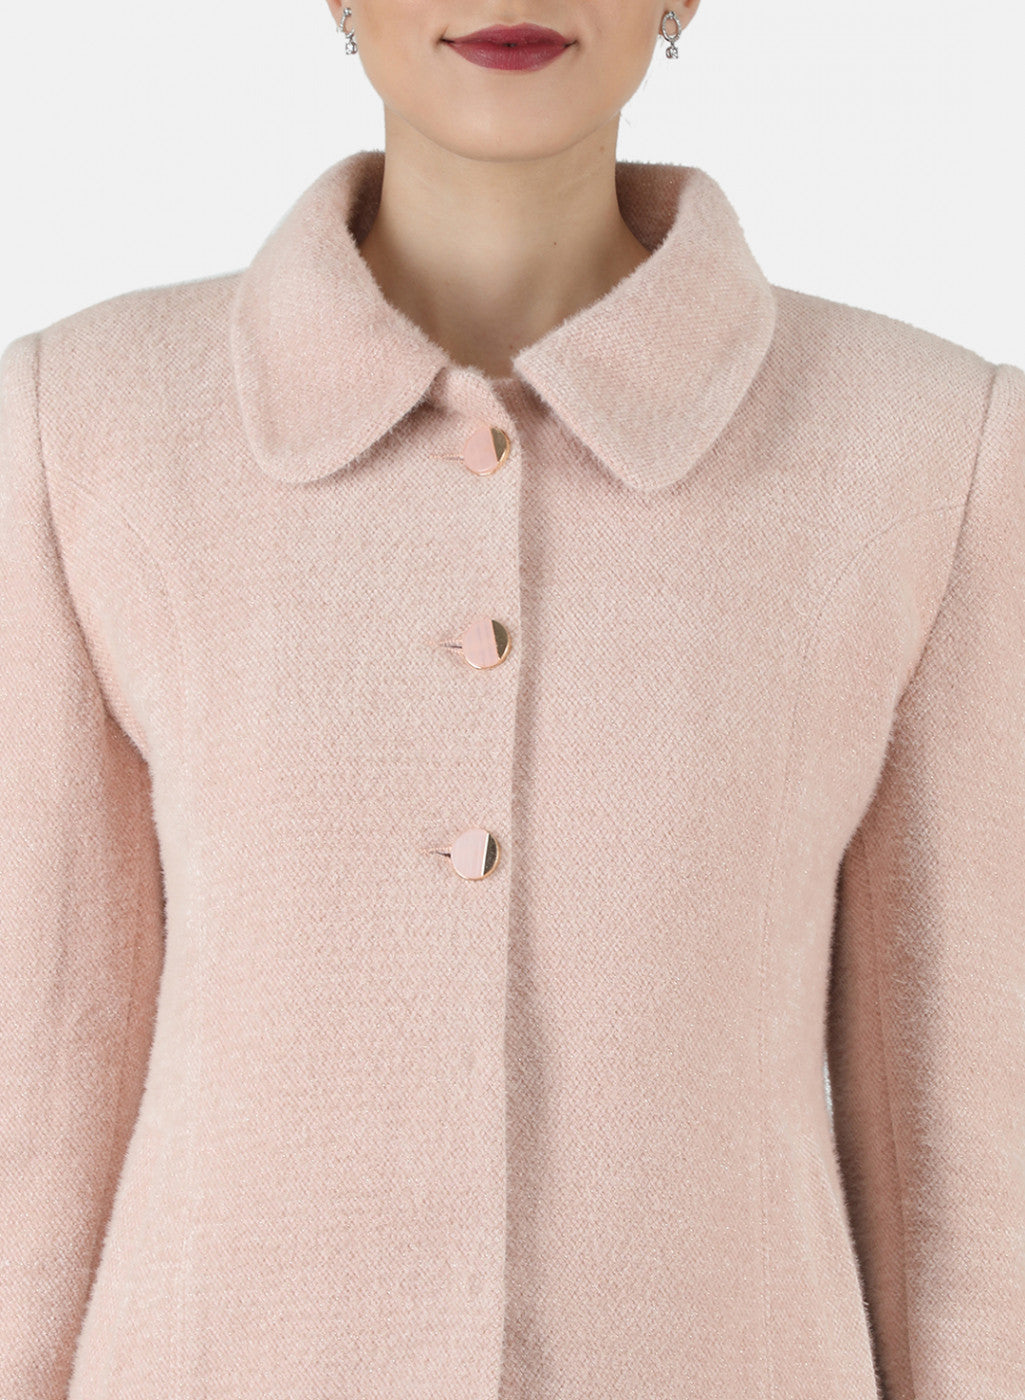 Women Pink Solid Coat